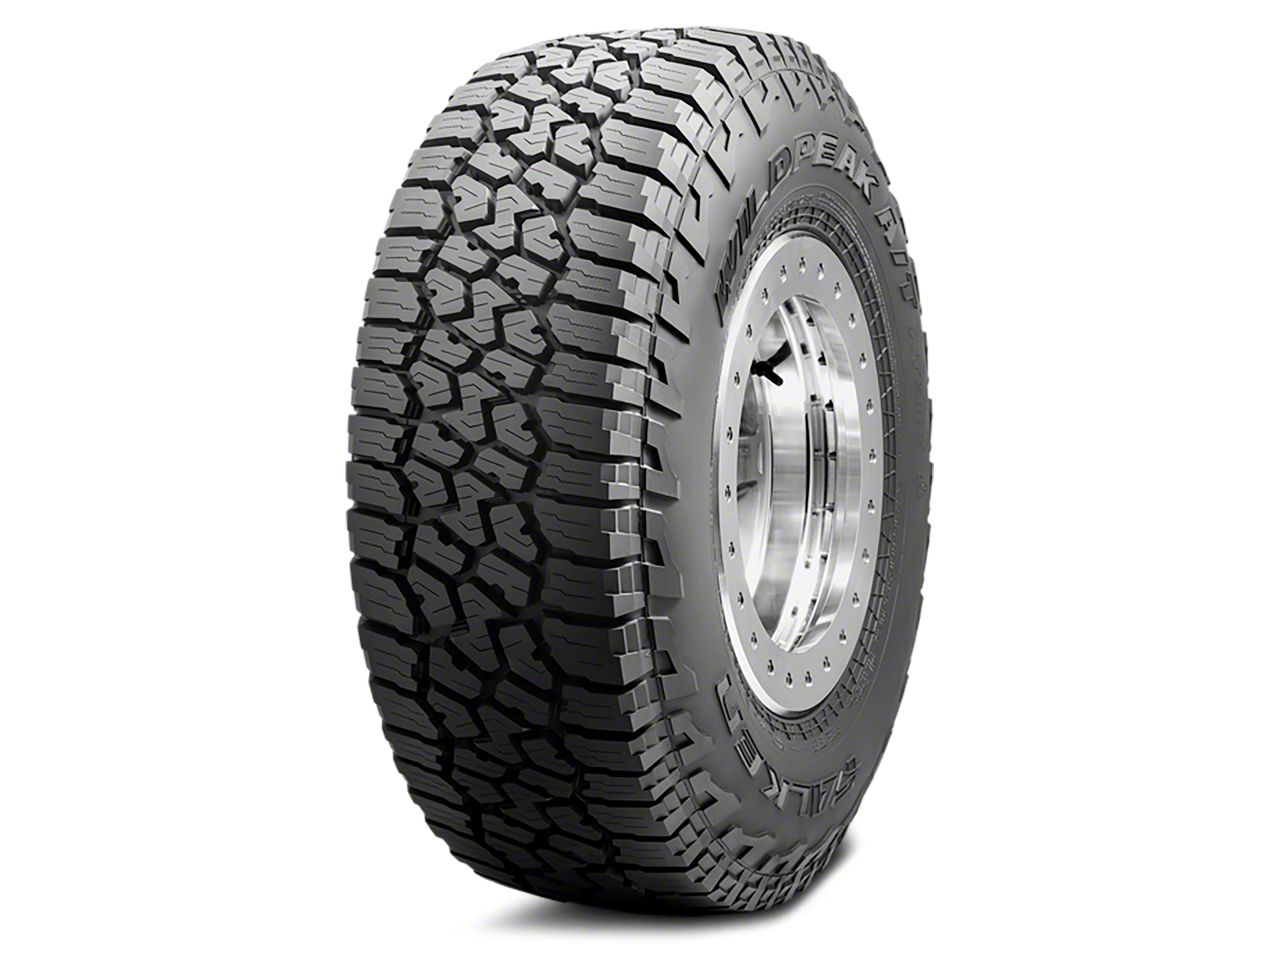 Colorado All-Terrain Tires